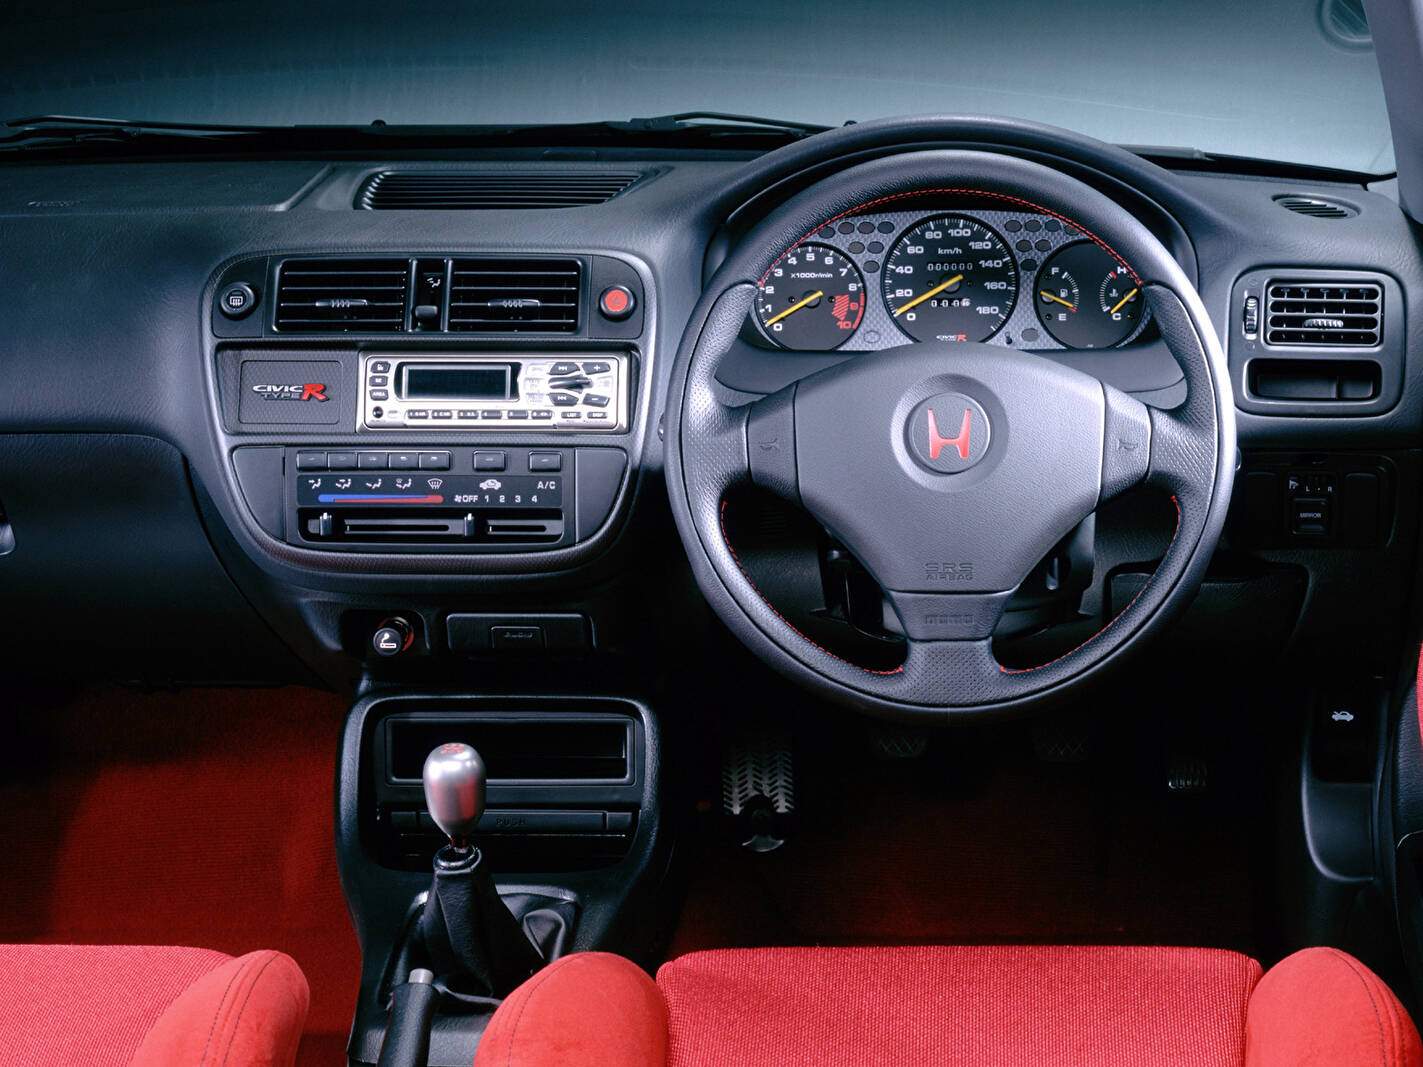 Honda Civic VI Type-R (1997-2000),  ajouté par fox58